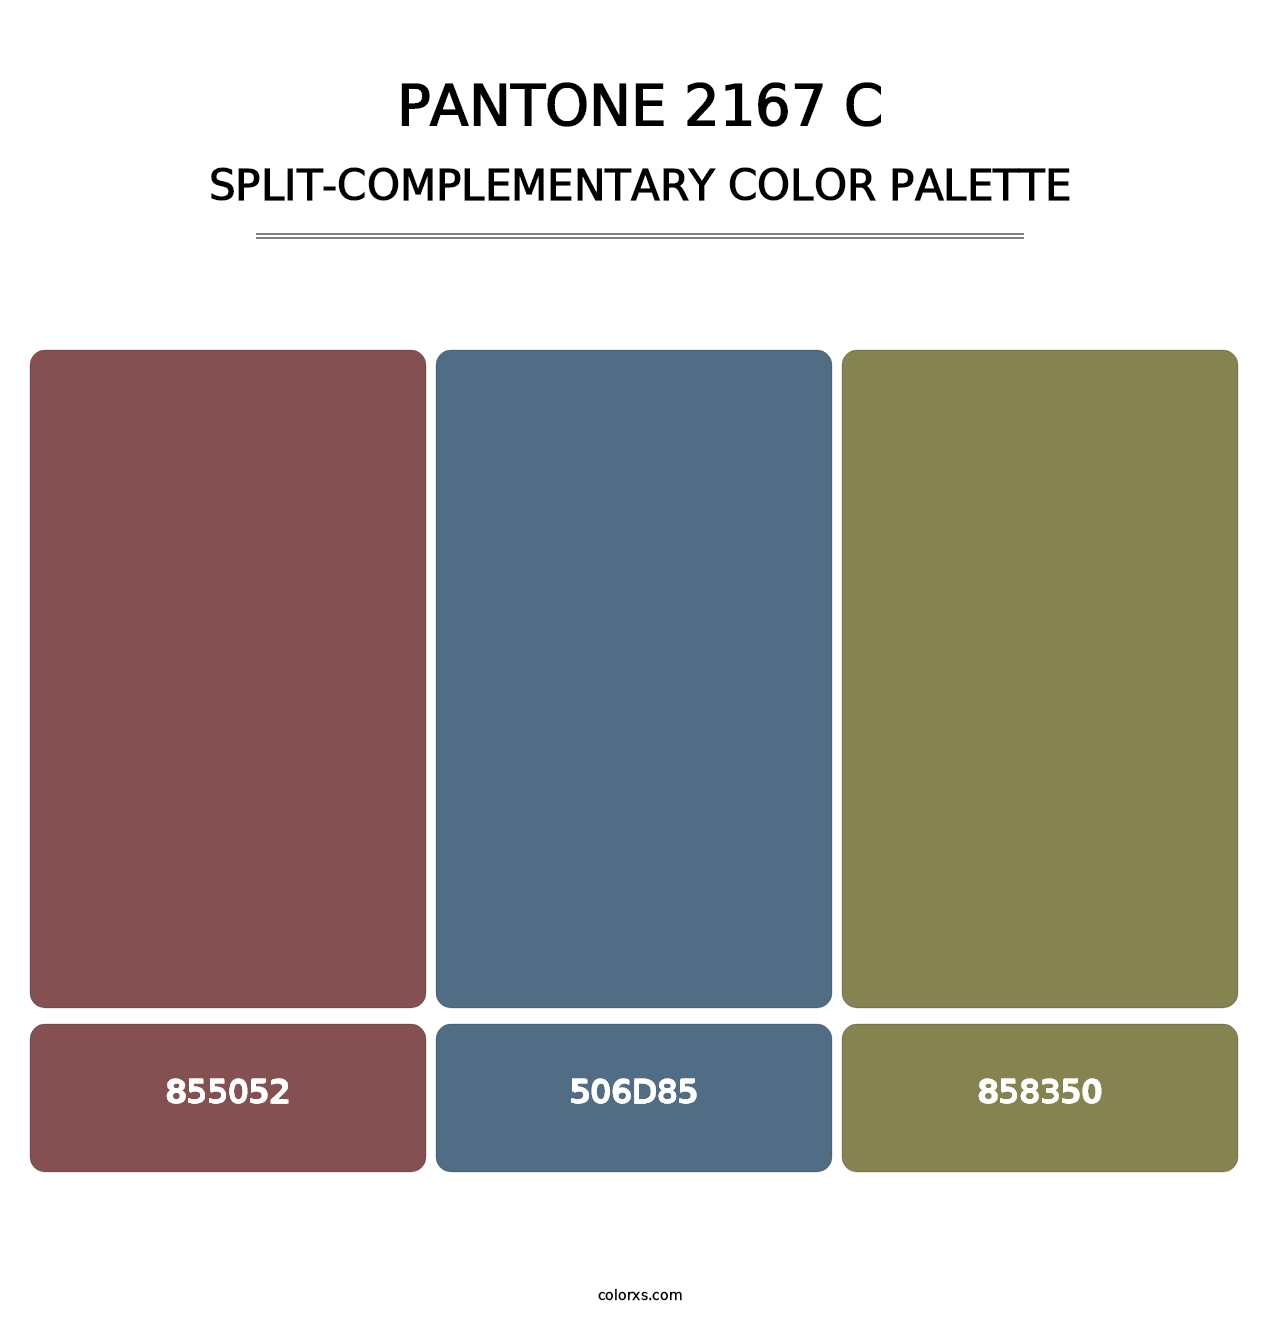 PANTONE 2167 C - Split-Complementary Color Palette